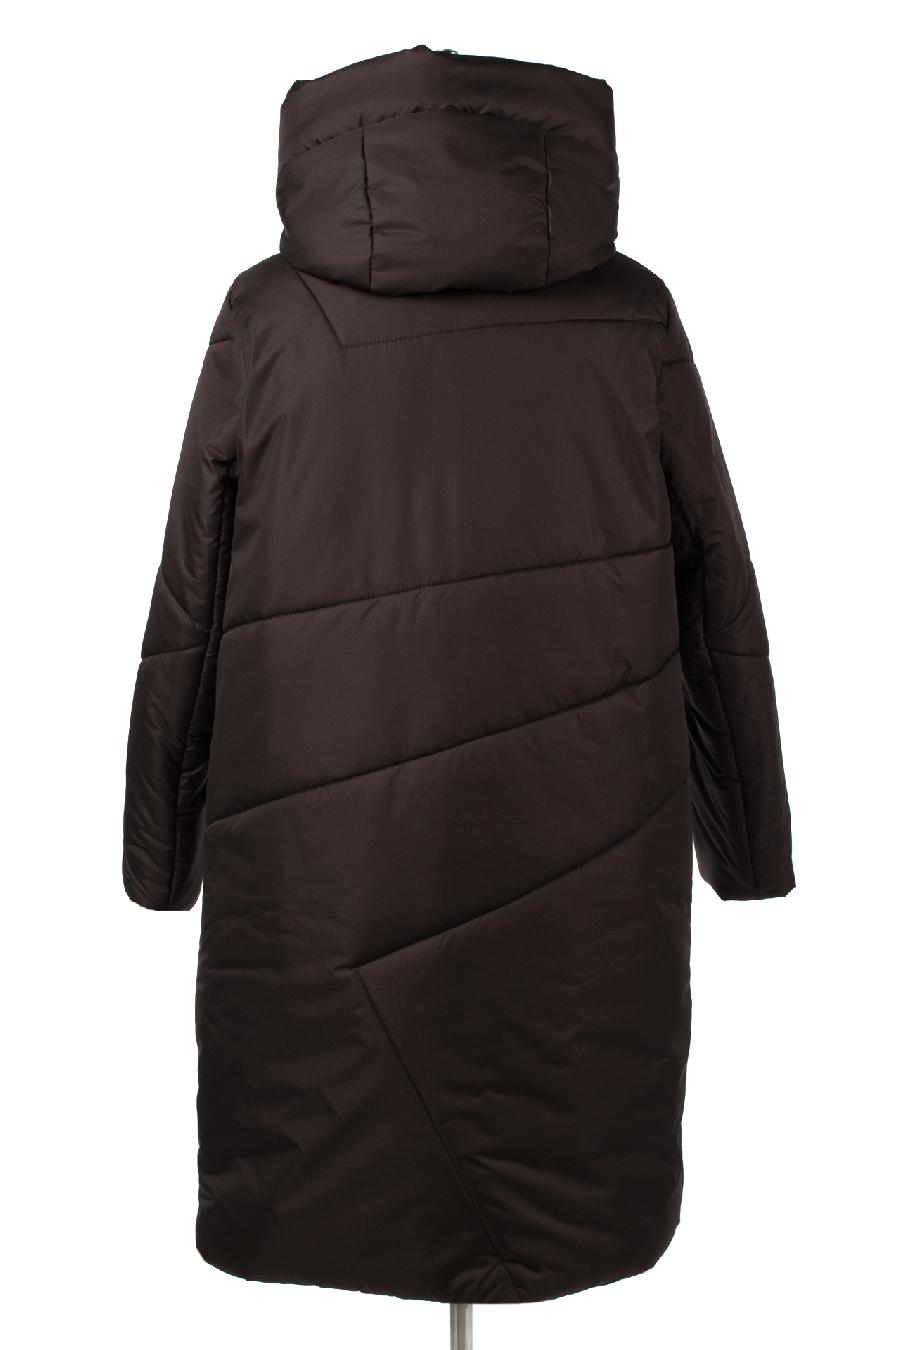 05-1997 Куртка женская зимняя (синтепон 300) Плащевка шоколад